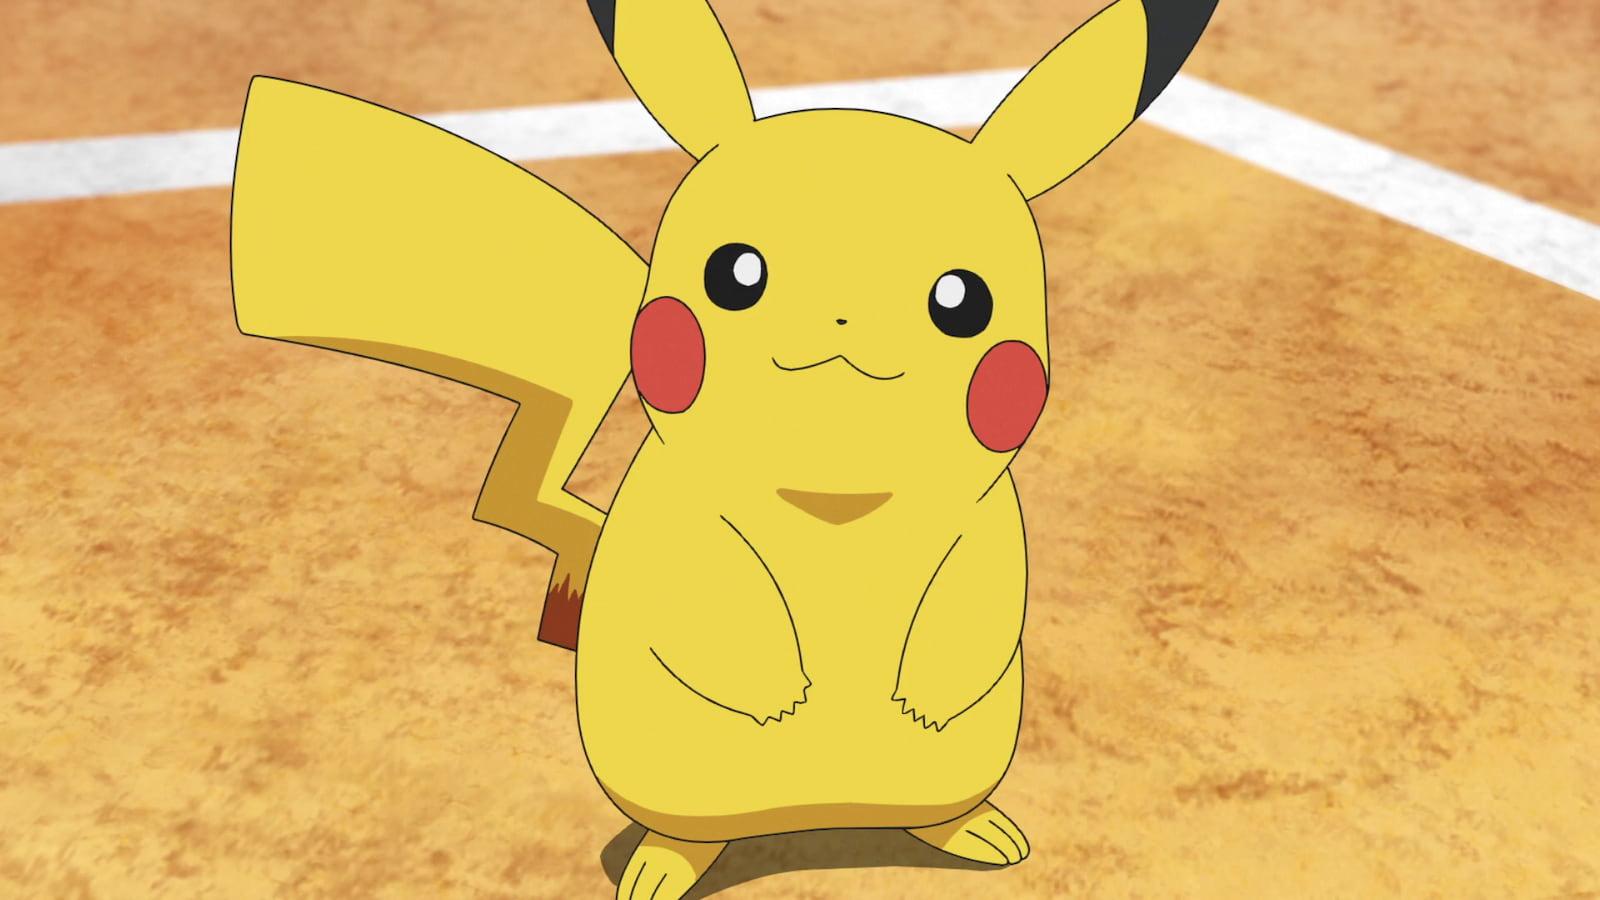 Ash's Pikachu in the Pokemon anime